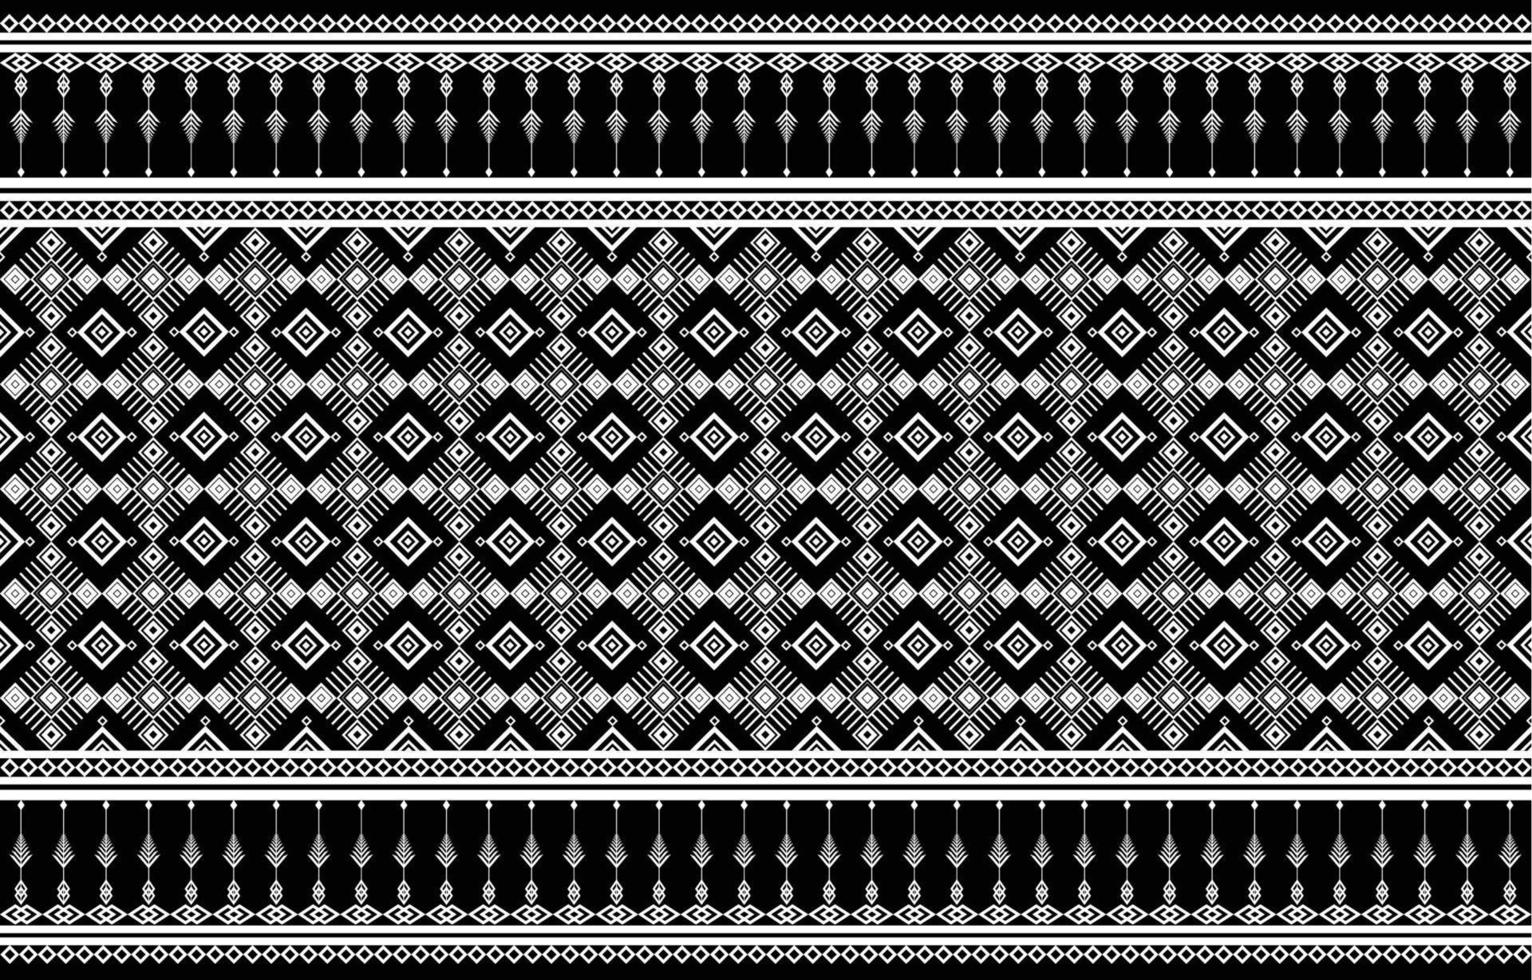 diseño de patrón de tela americana. use la geometría para crear un patrón de tela. diseño para la industria textil, fondo, moqueta, papel pintado, ropa, batik y tejido étnico. vector